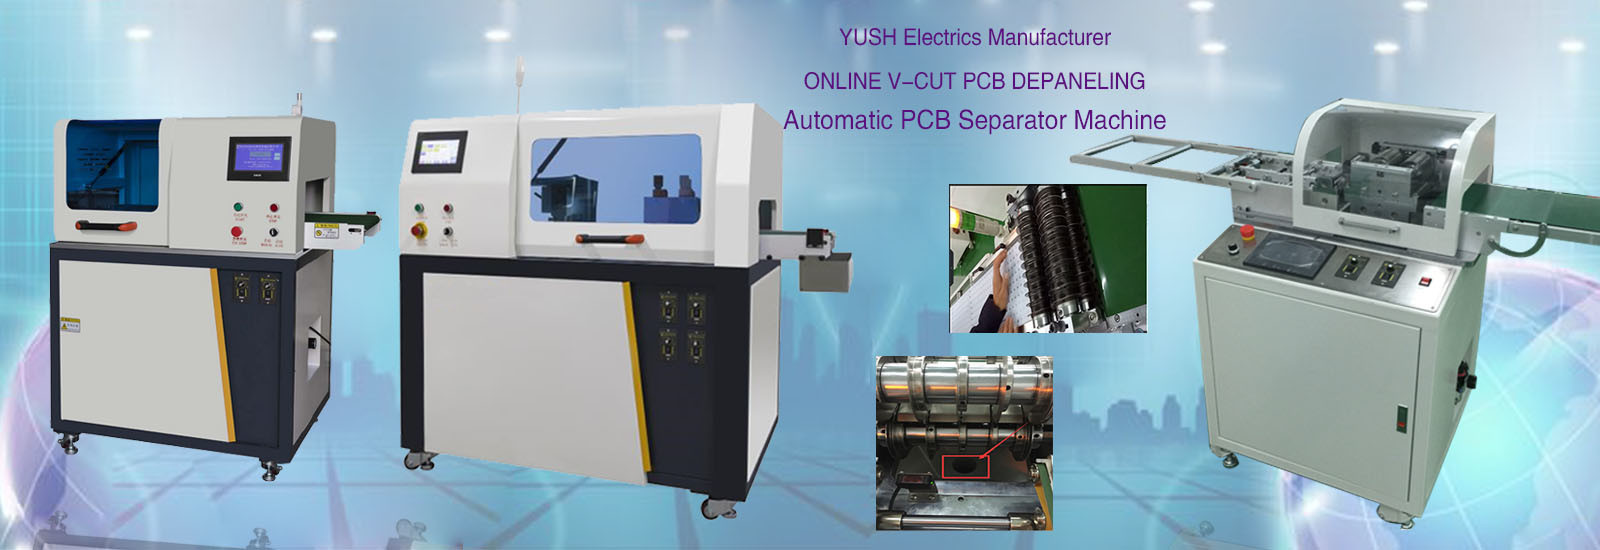 jakość PCB Depaneling Machine fabryka